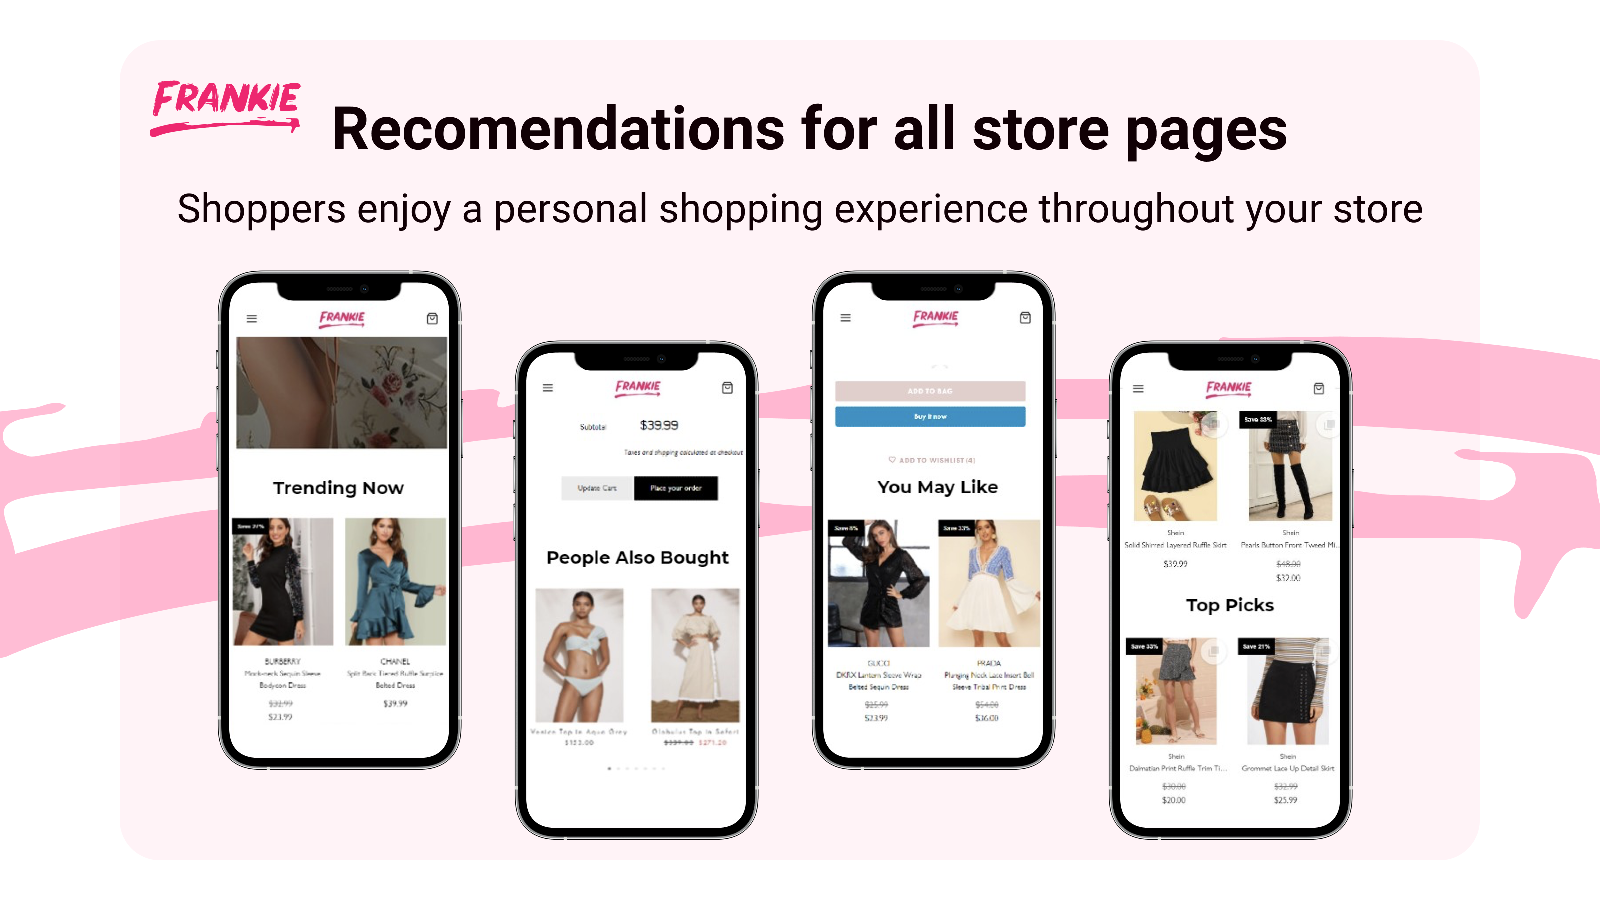 Amazon-achtige gepersonaliseerde aanbevelingen op elke winkelpagina